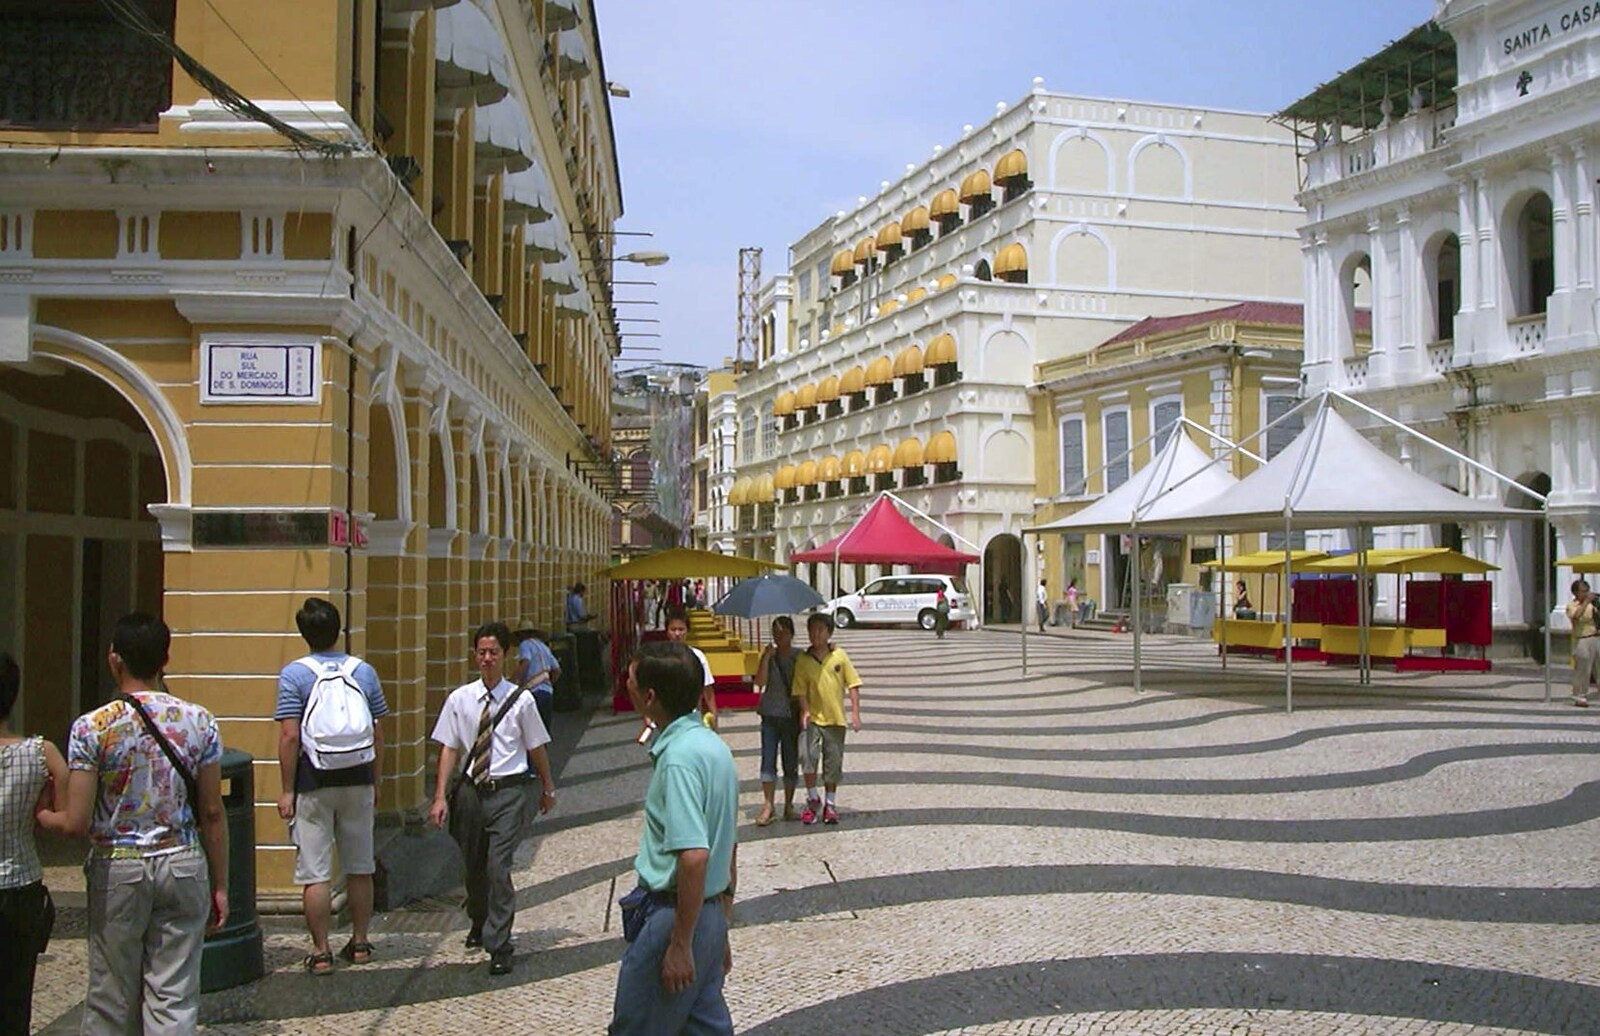 A Day Trip to Macau, China - 16th August 2001: The market square: Rua Sul do Mercado De S. Domingos